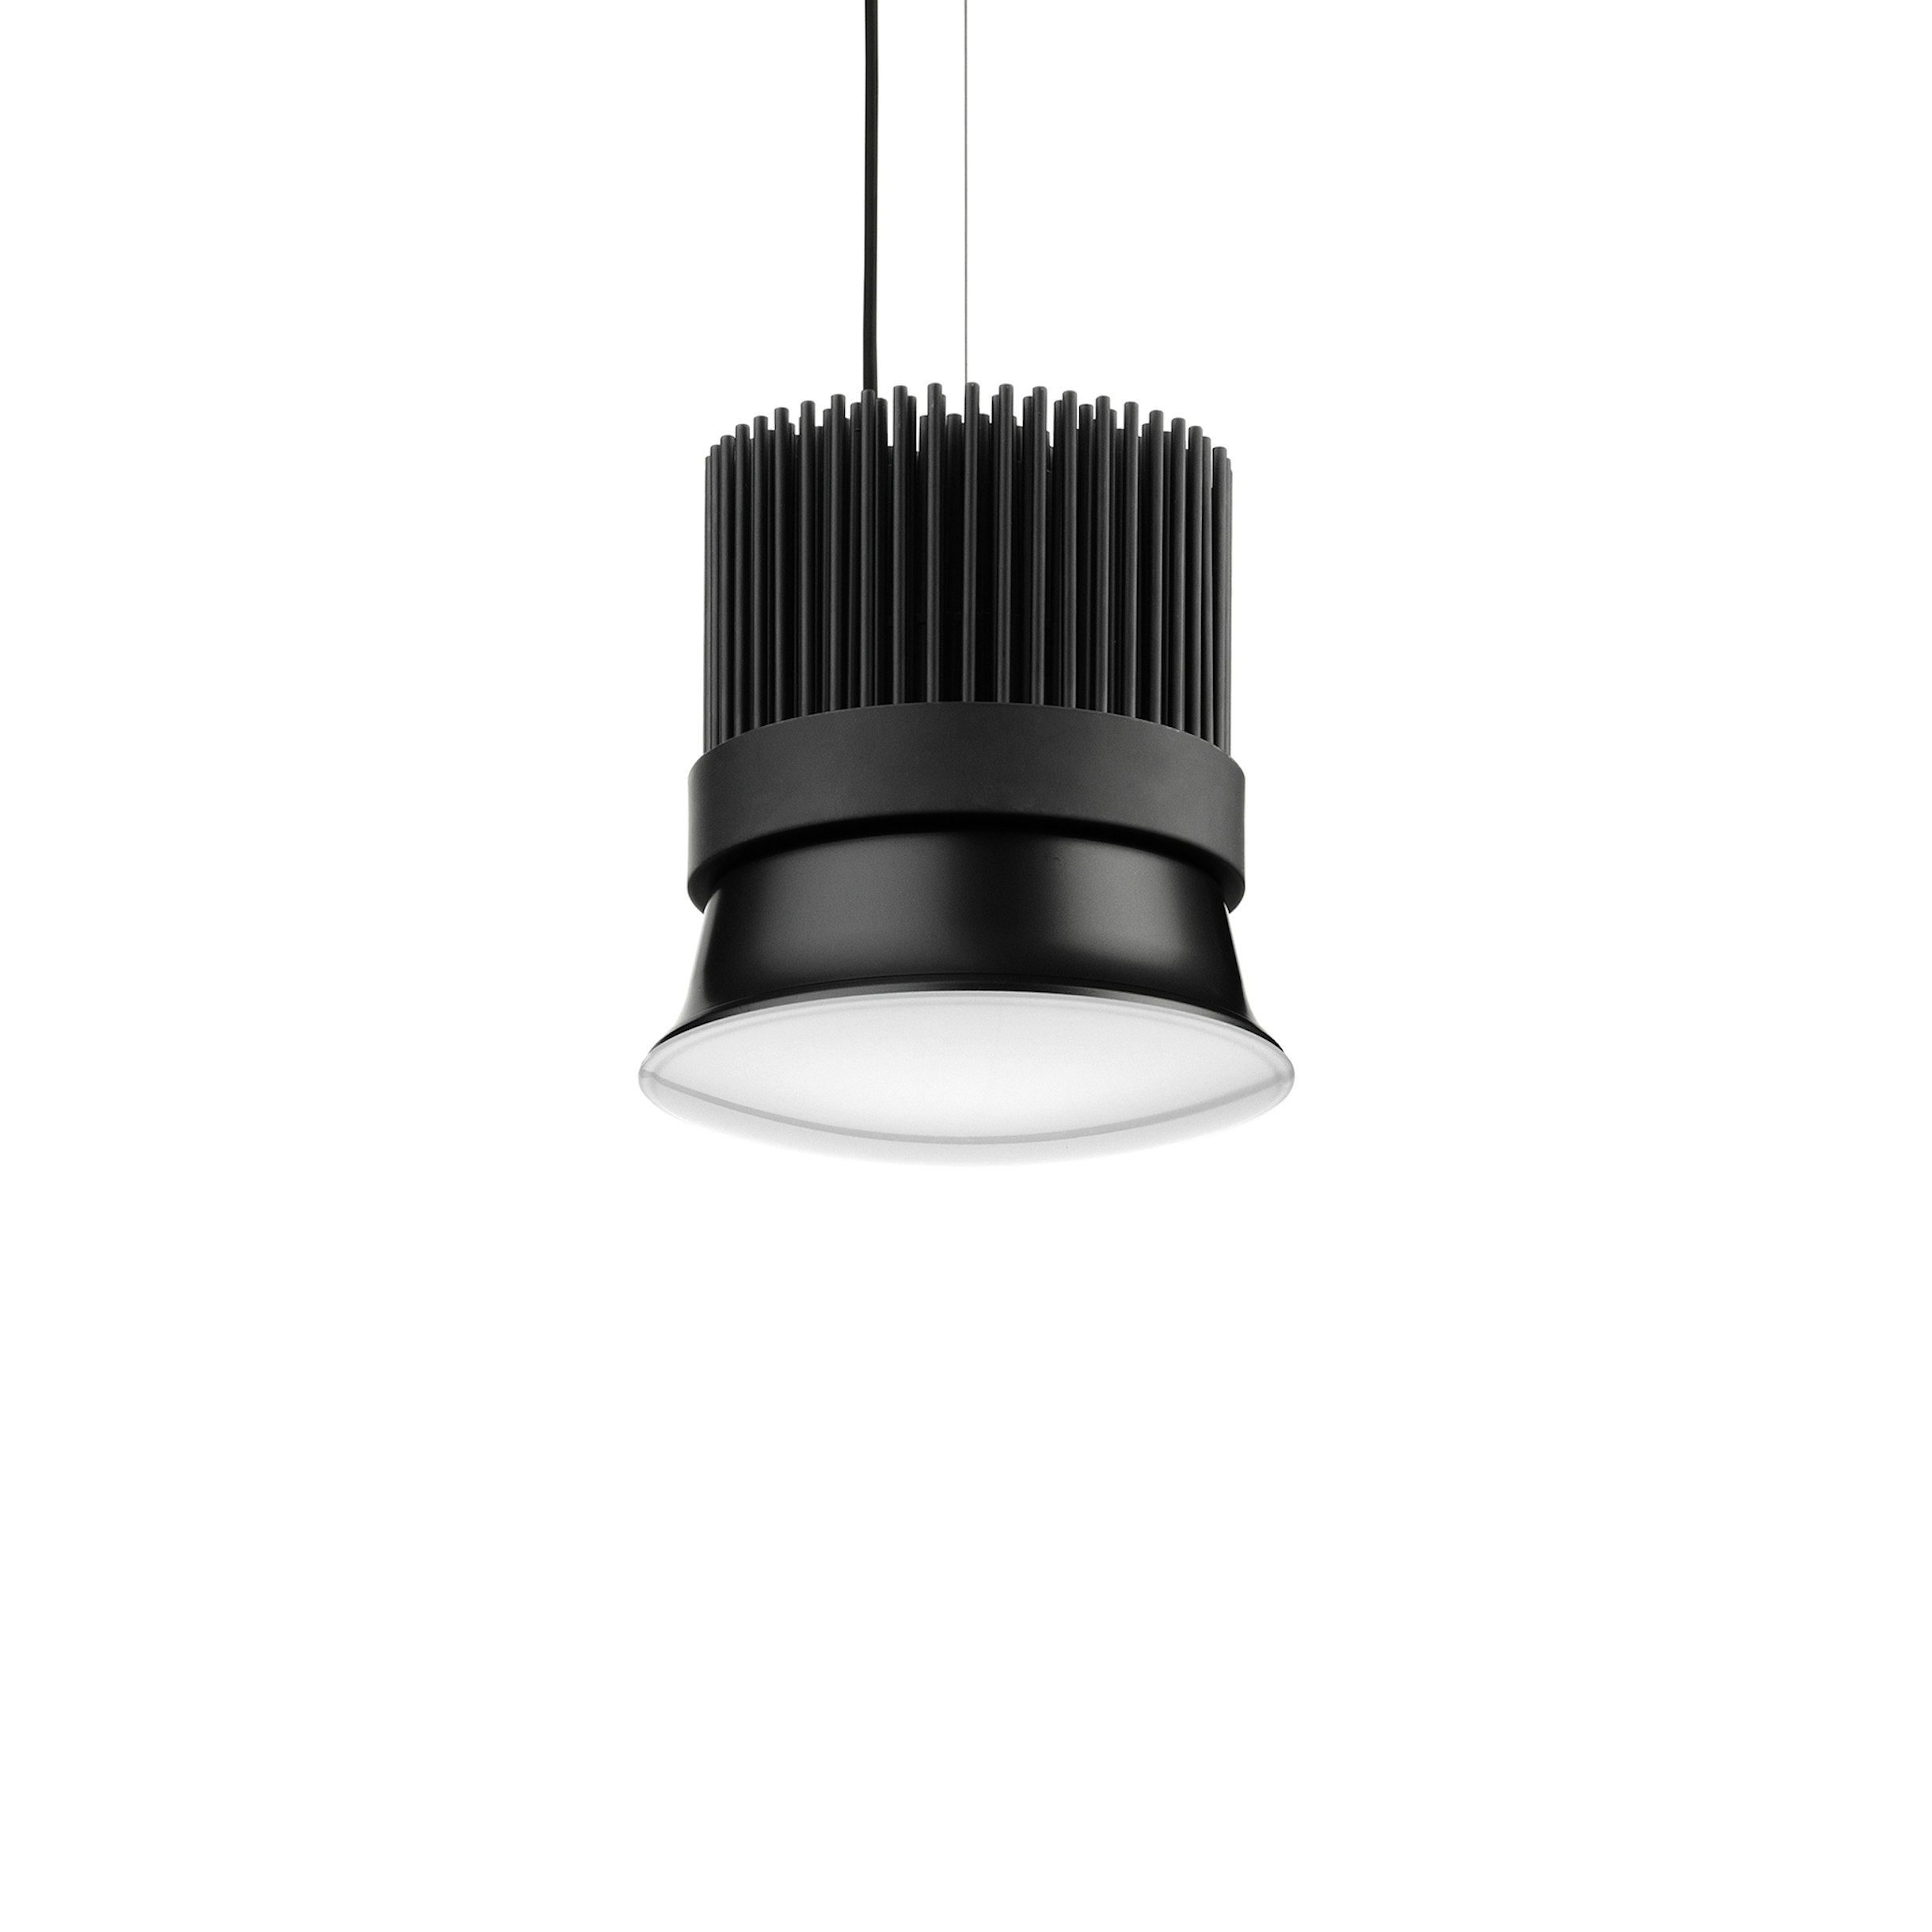 deadlock udvikling af inch Light Bell No Dimmable | Flos